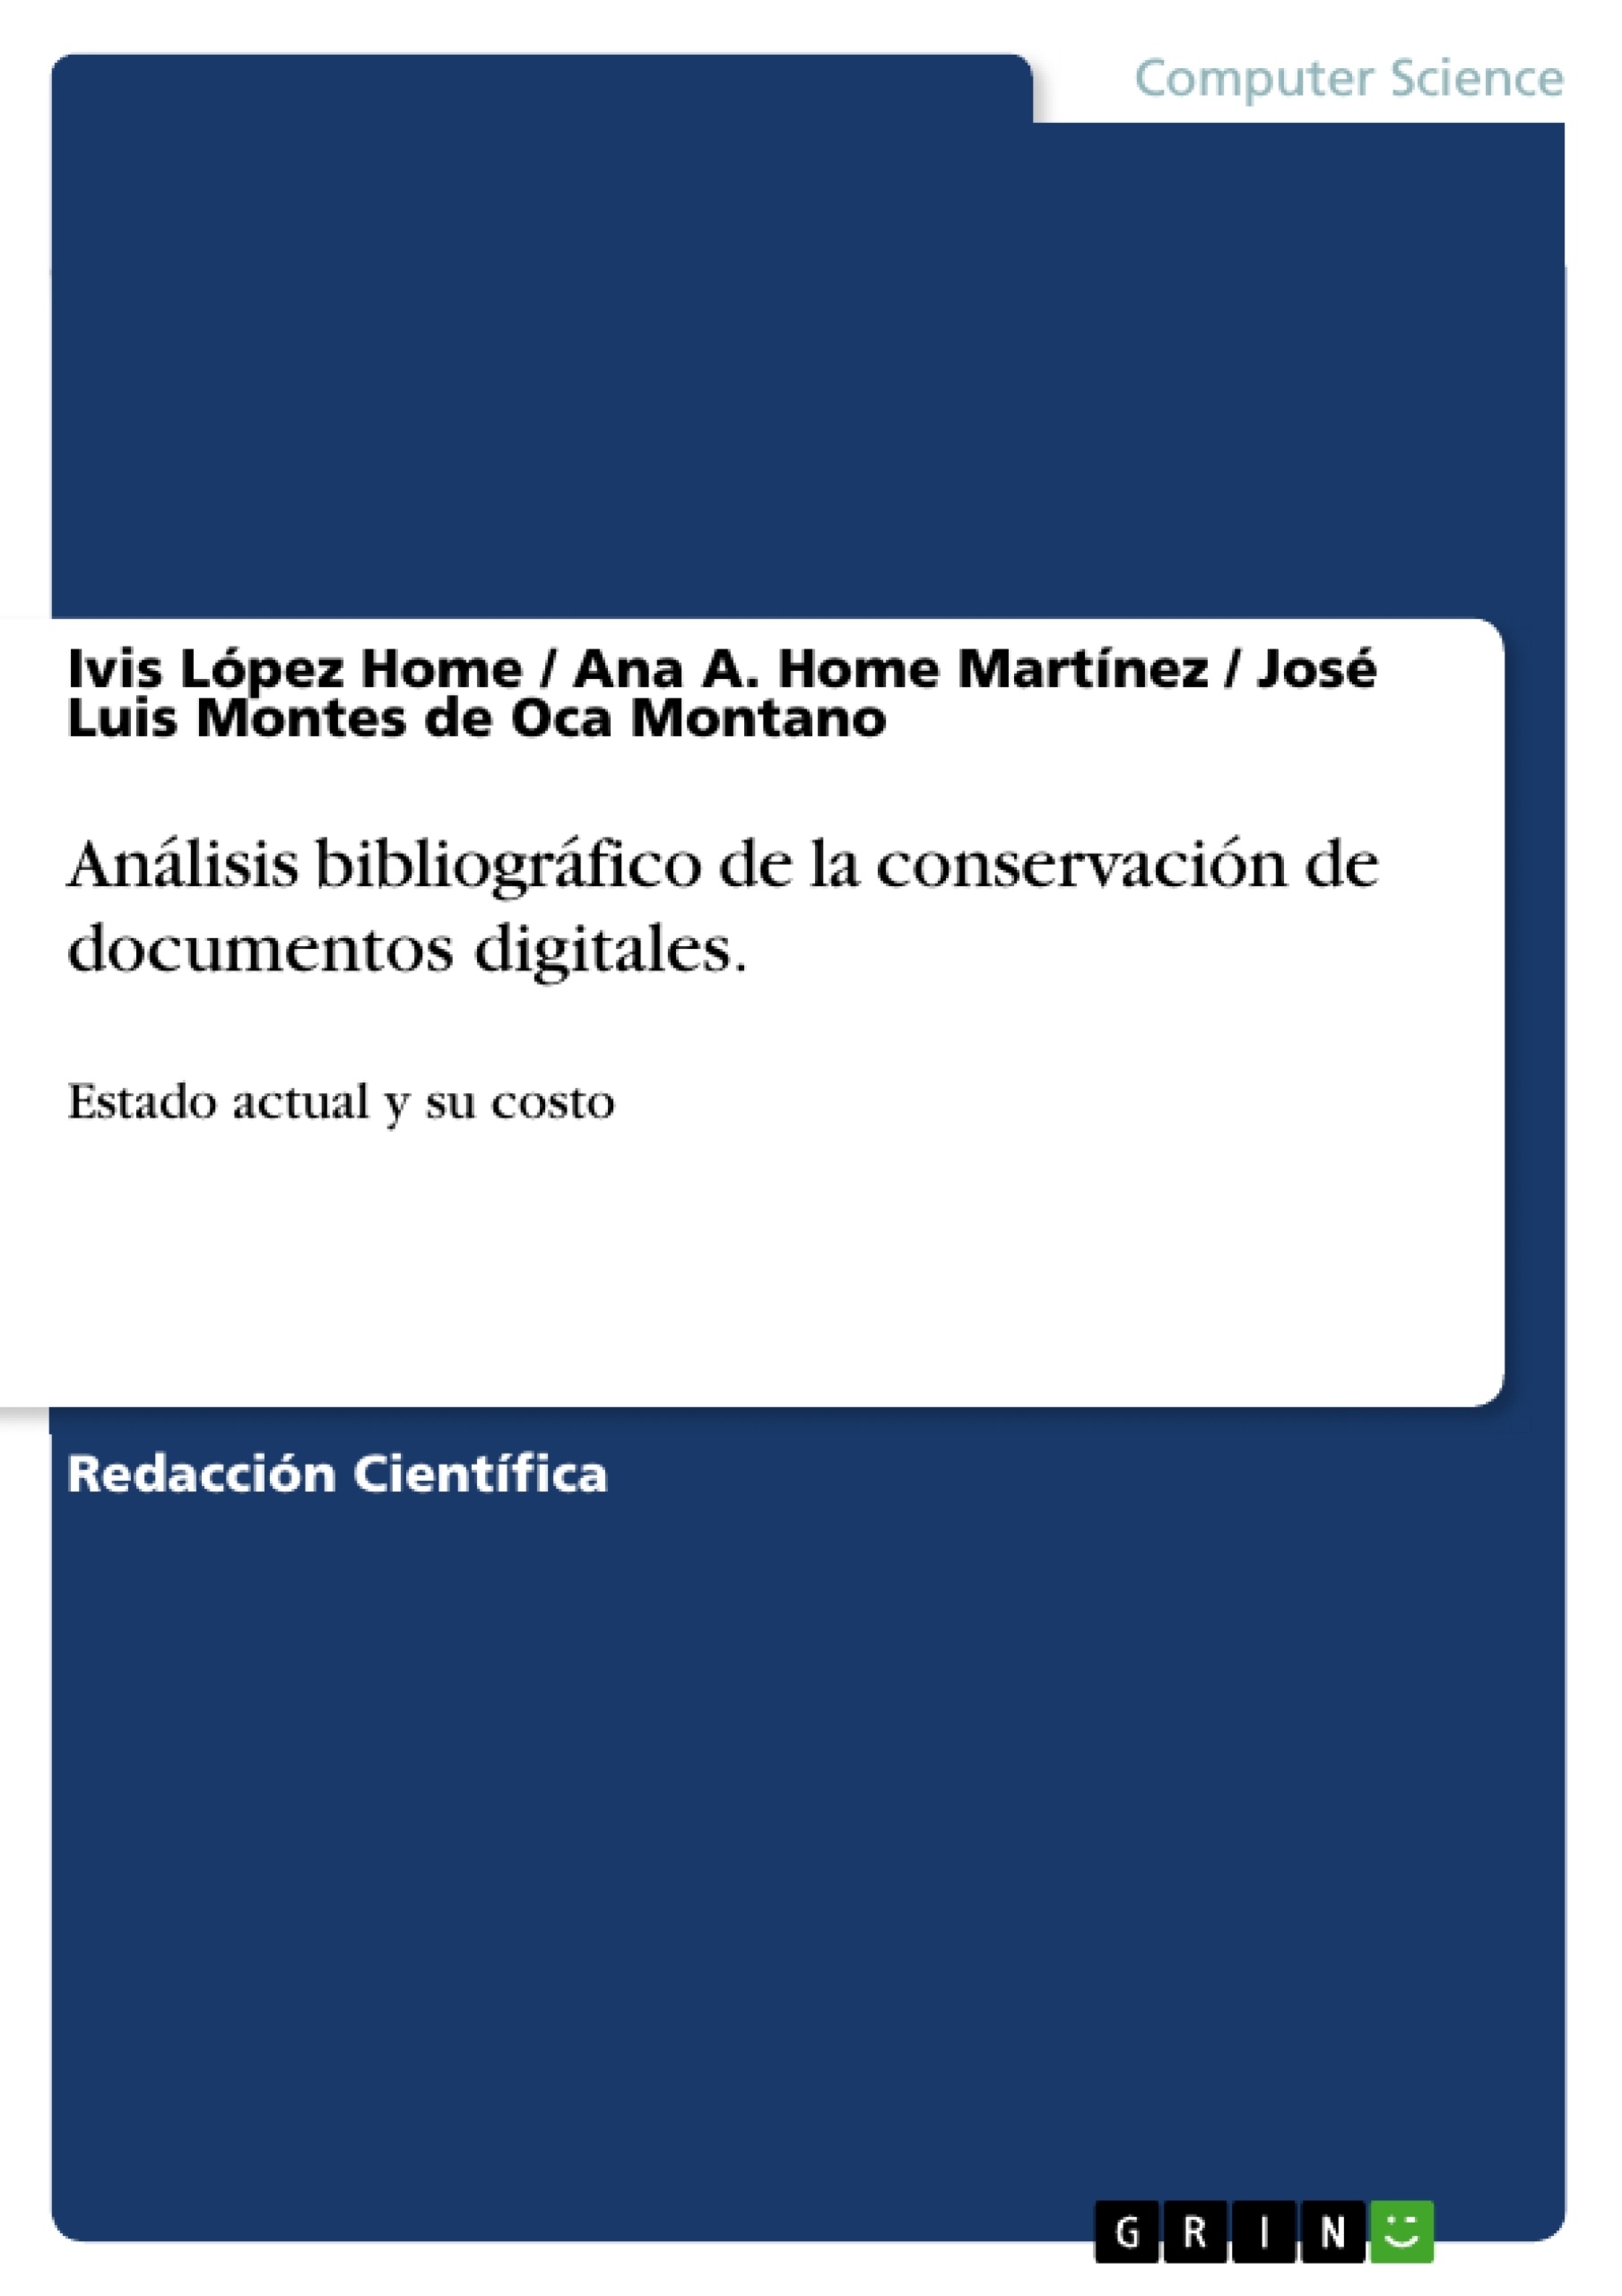 Titel: Análisis bibliográfico de la conservación de documentos digitales.